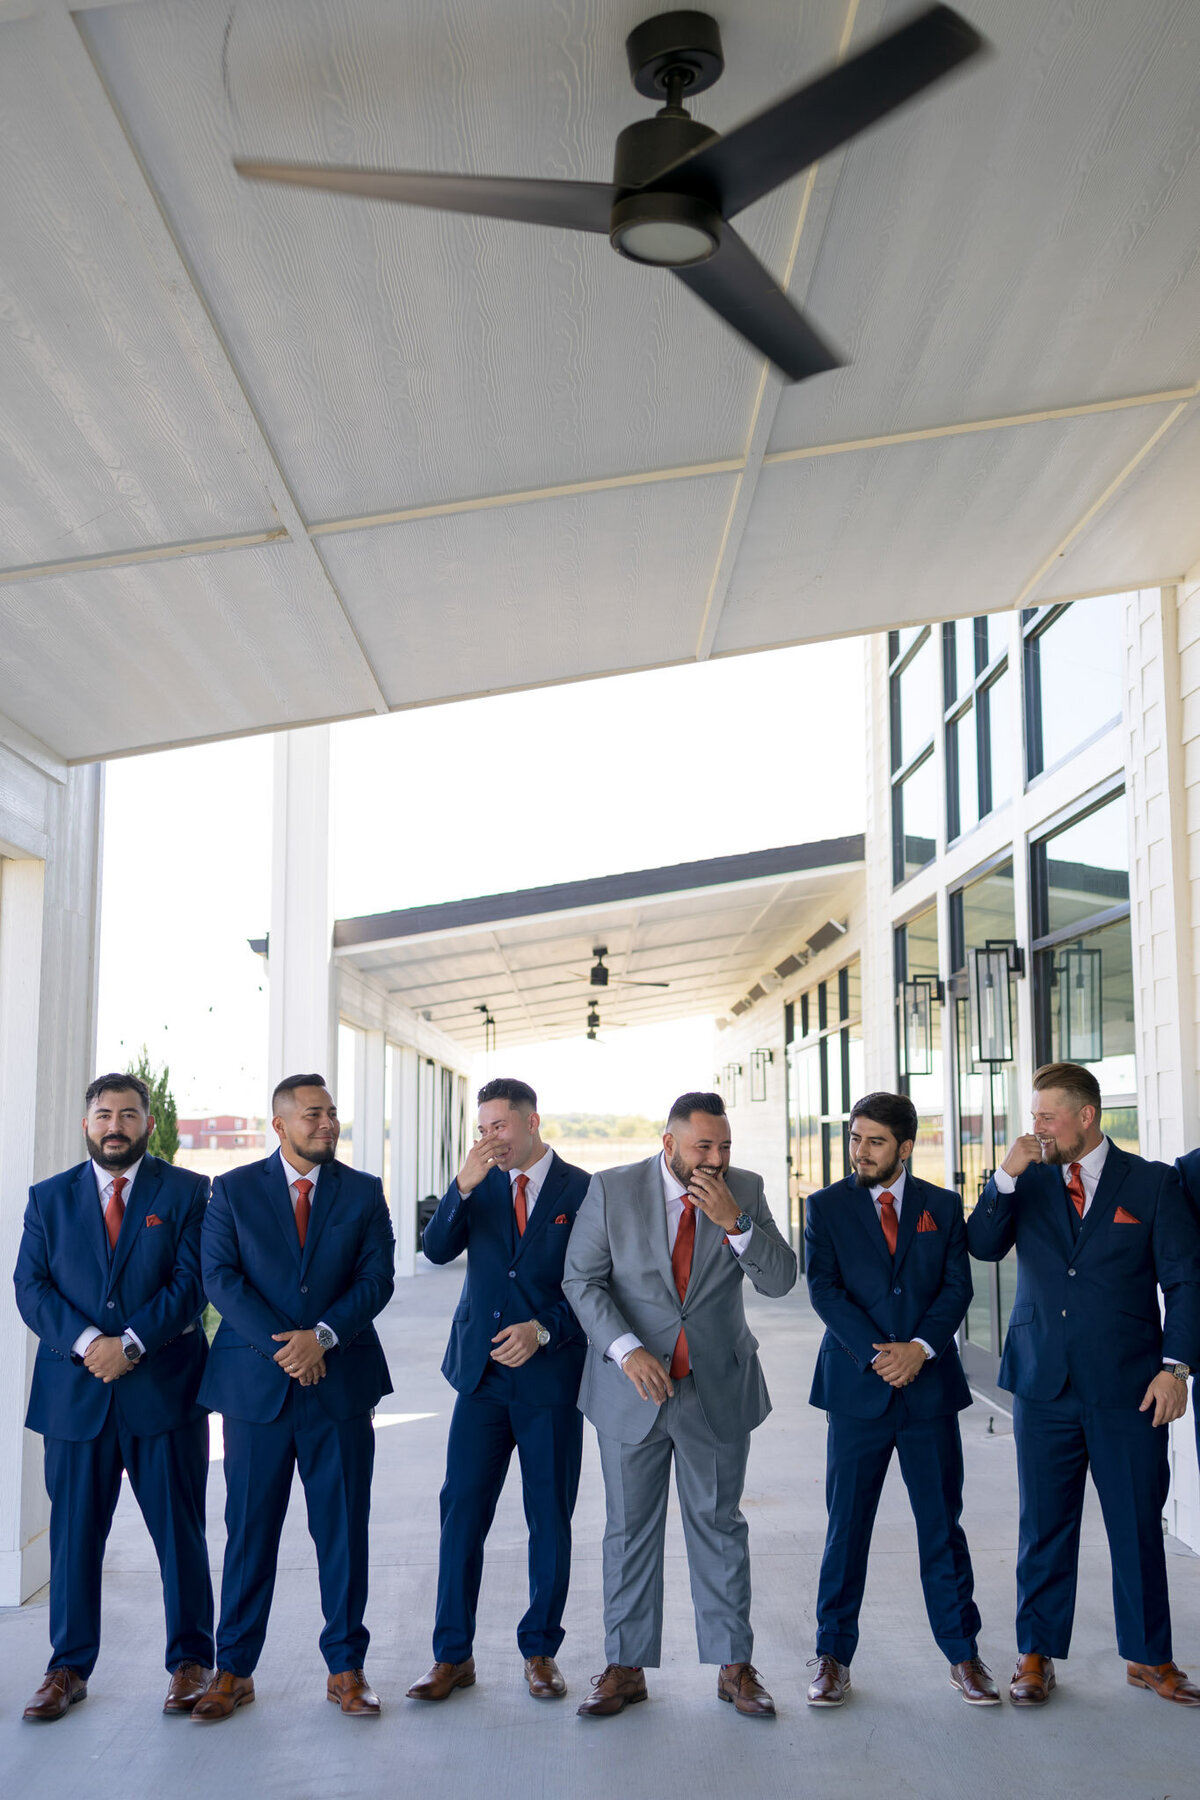 groom with groomsmen in navy suits